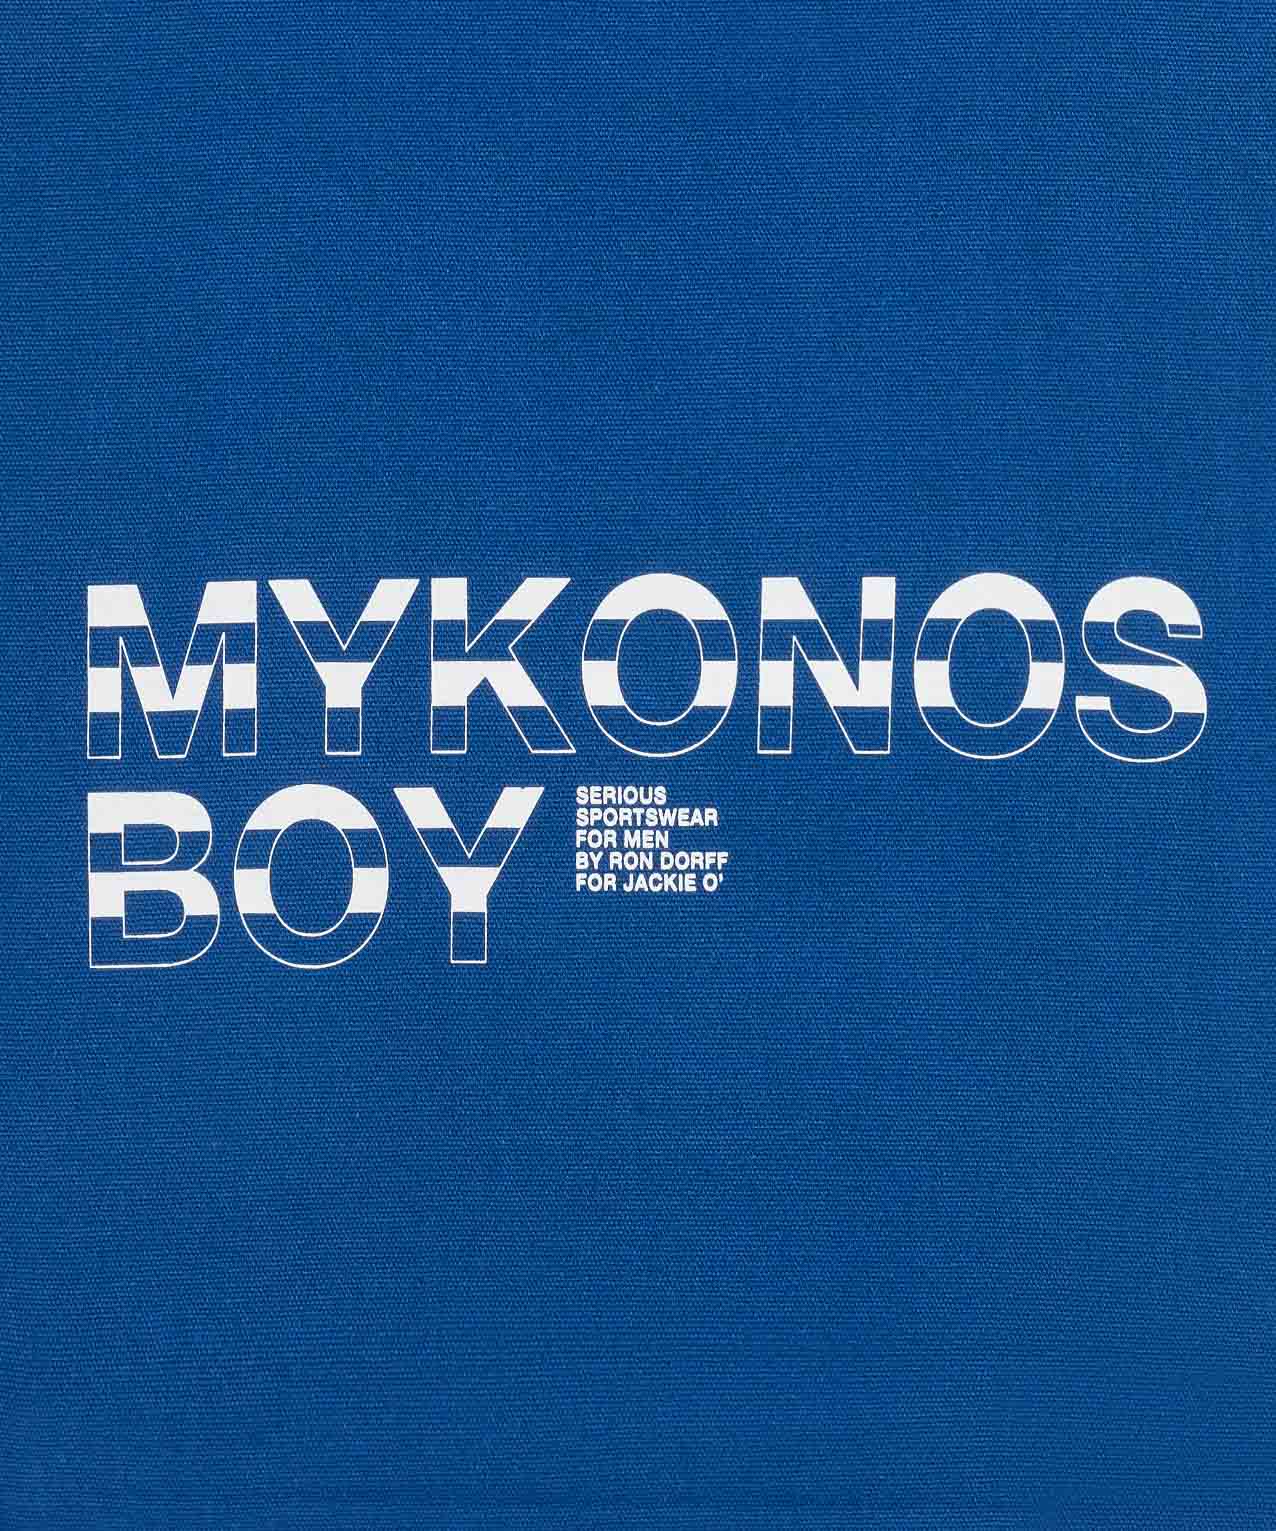 Sac en coton canevas à imprimé MYKONOS BOY: Bleu grec